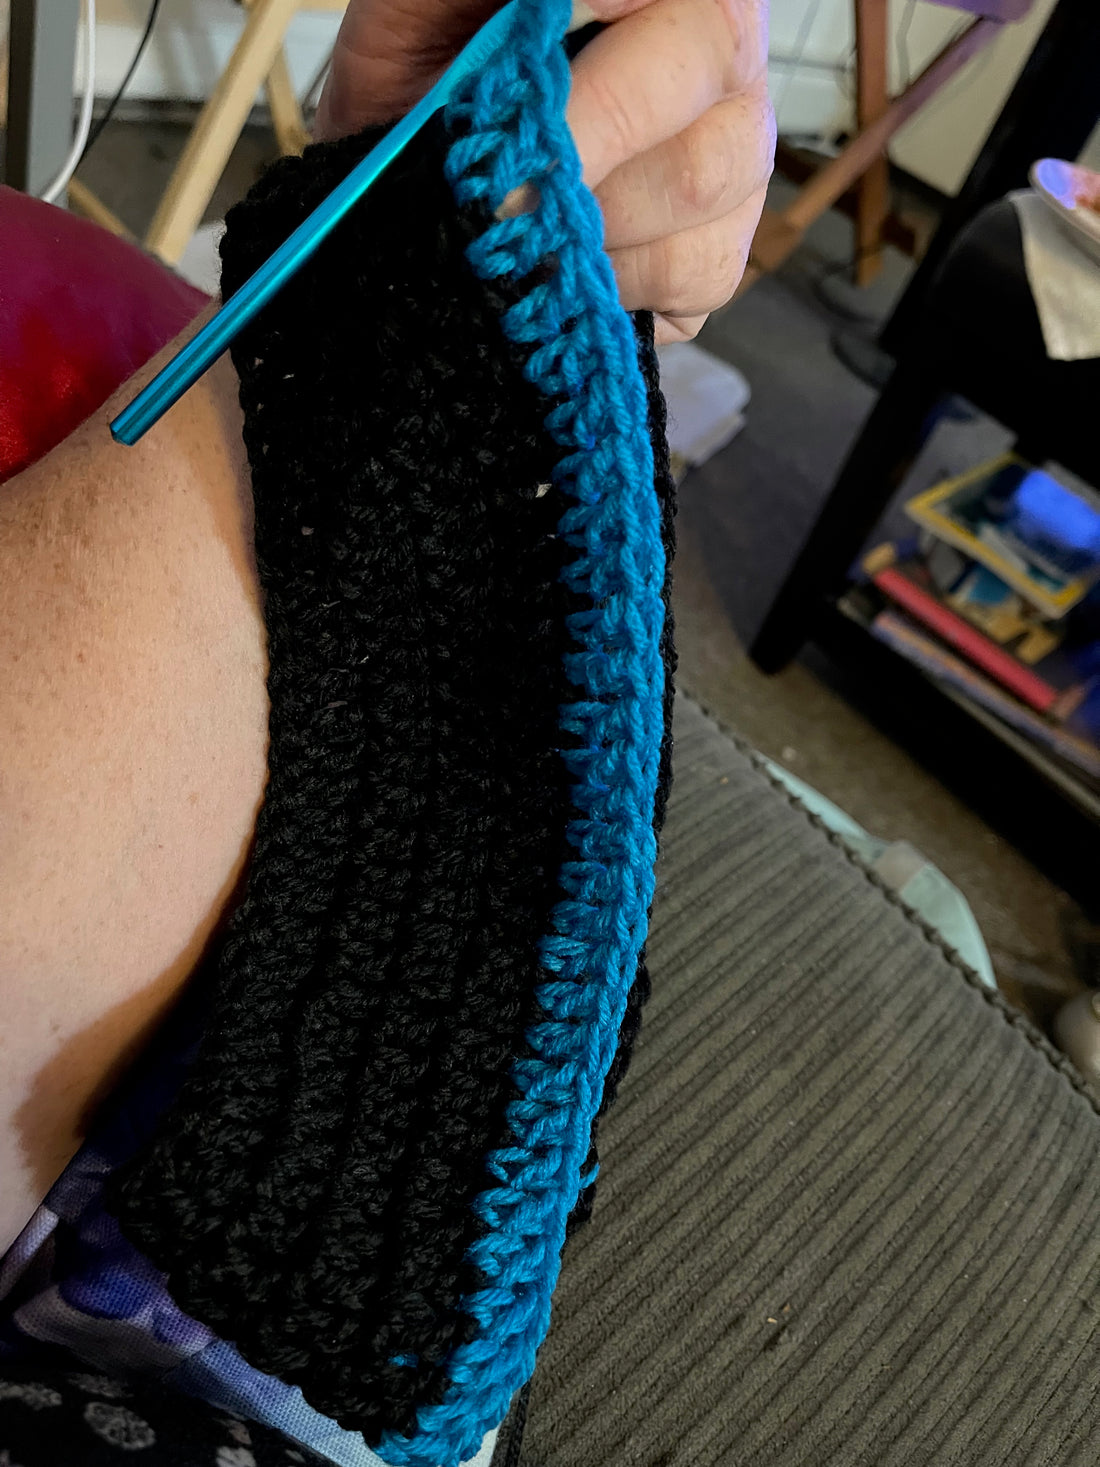 Crochet Bag Project Week 4